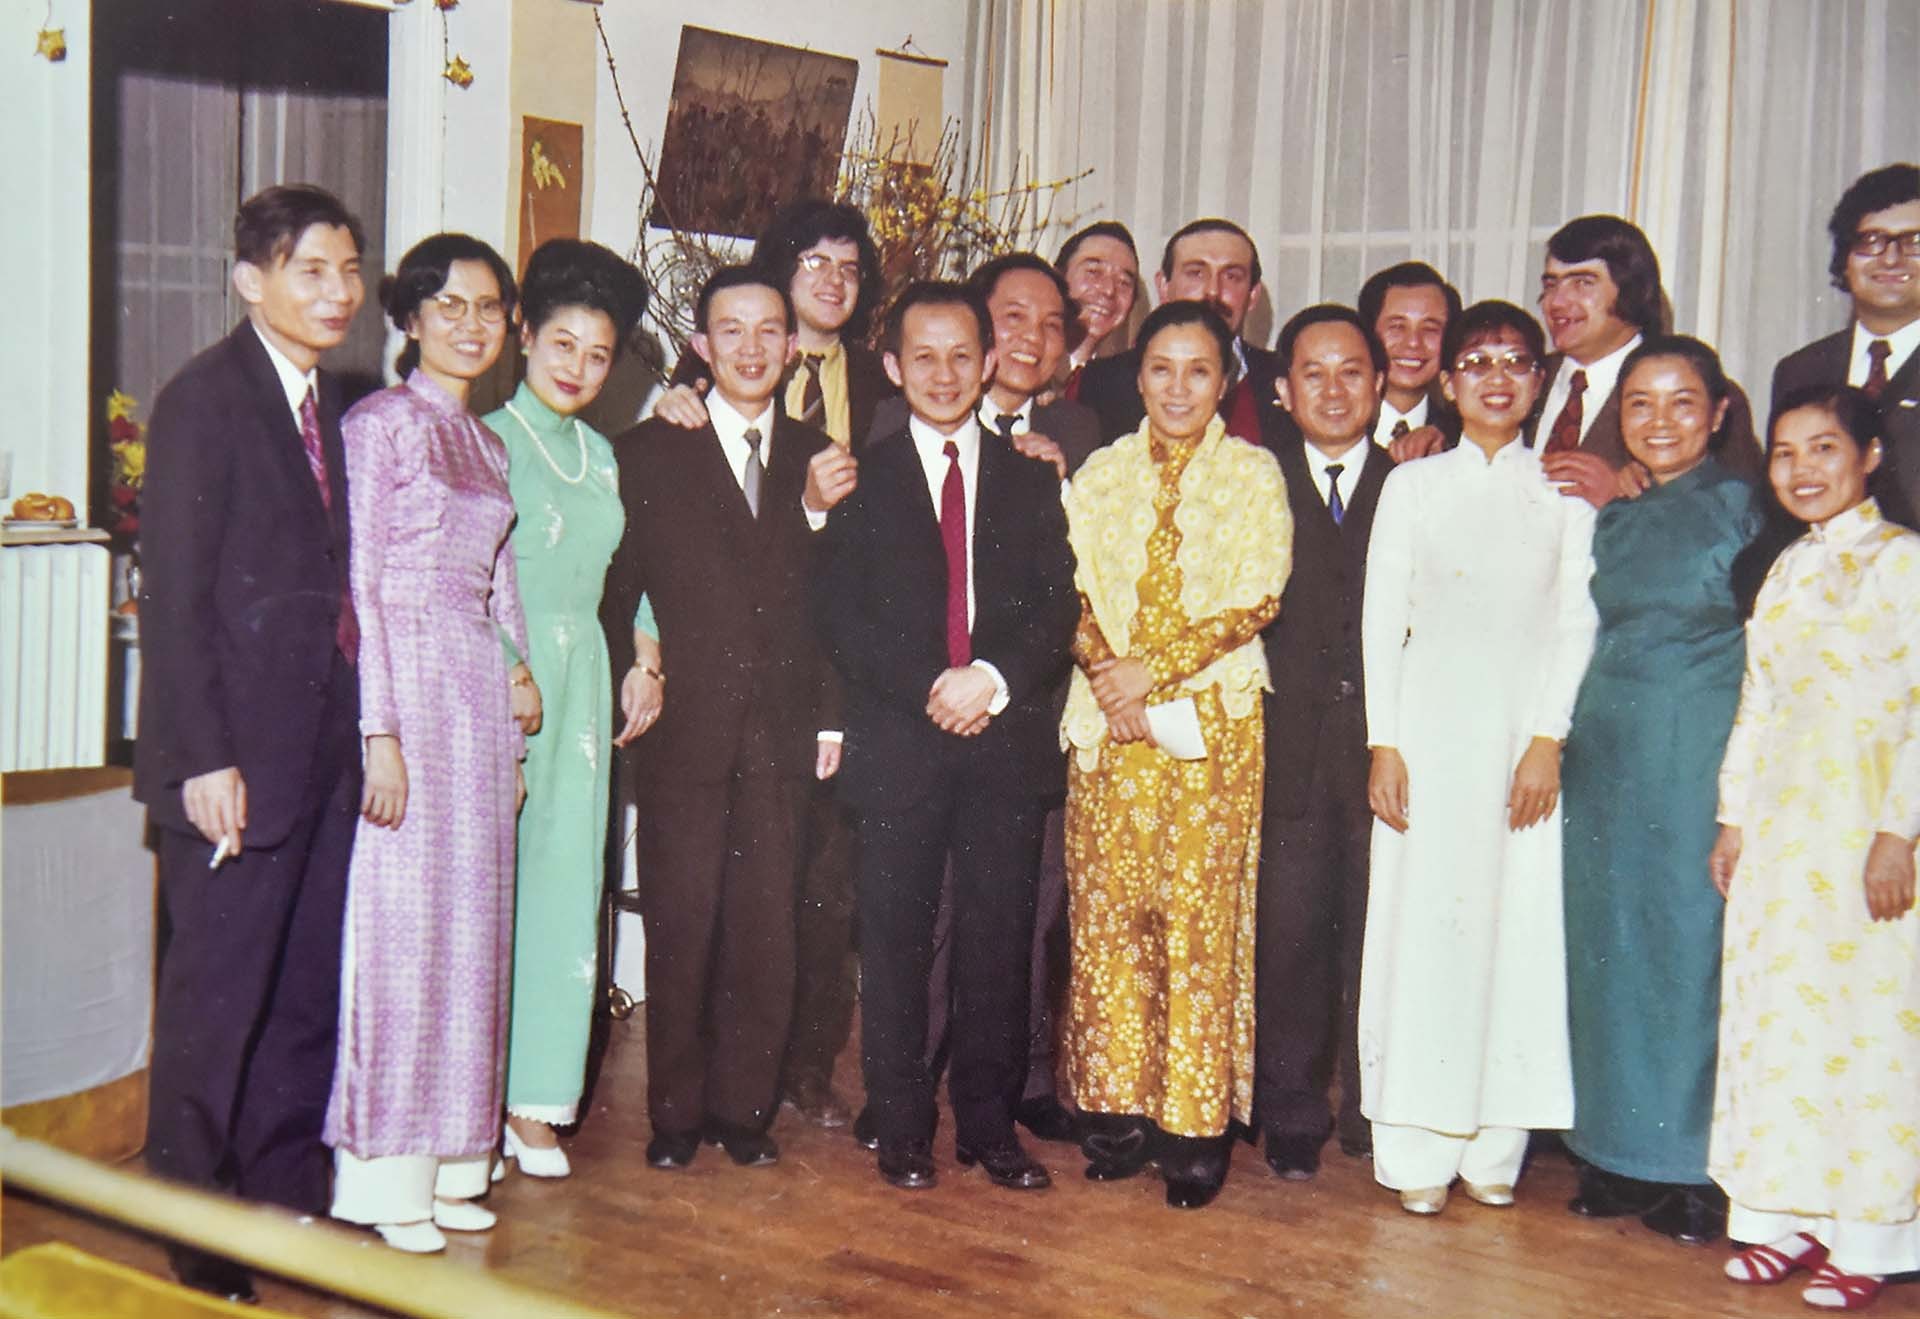 Thành viên đoàn Chính phủ Cách mạng Lâm thời Cộng hòa miền Nam Việt Nam và cộng tác viên Pháp, Việt kiều nhân dịp Tết Quý Sửu ở Verrières-Le-Buisson, ngày 06/02/1973.  Ông Trương Xuân Thâm đứng ngoài cùng bên trái.